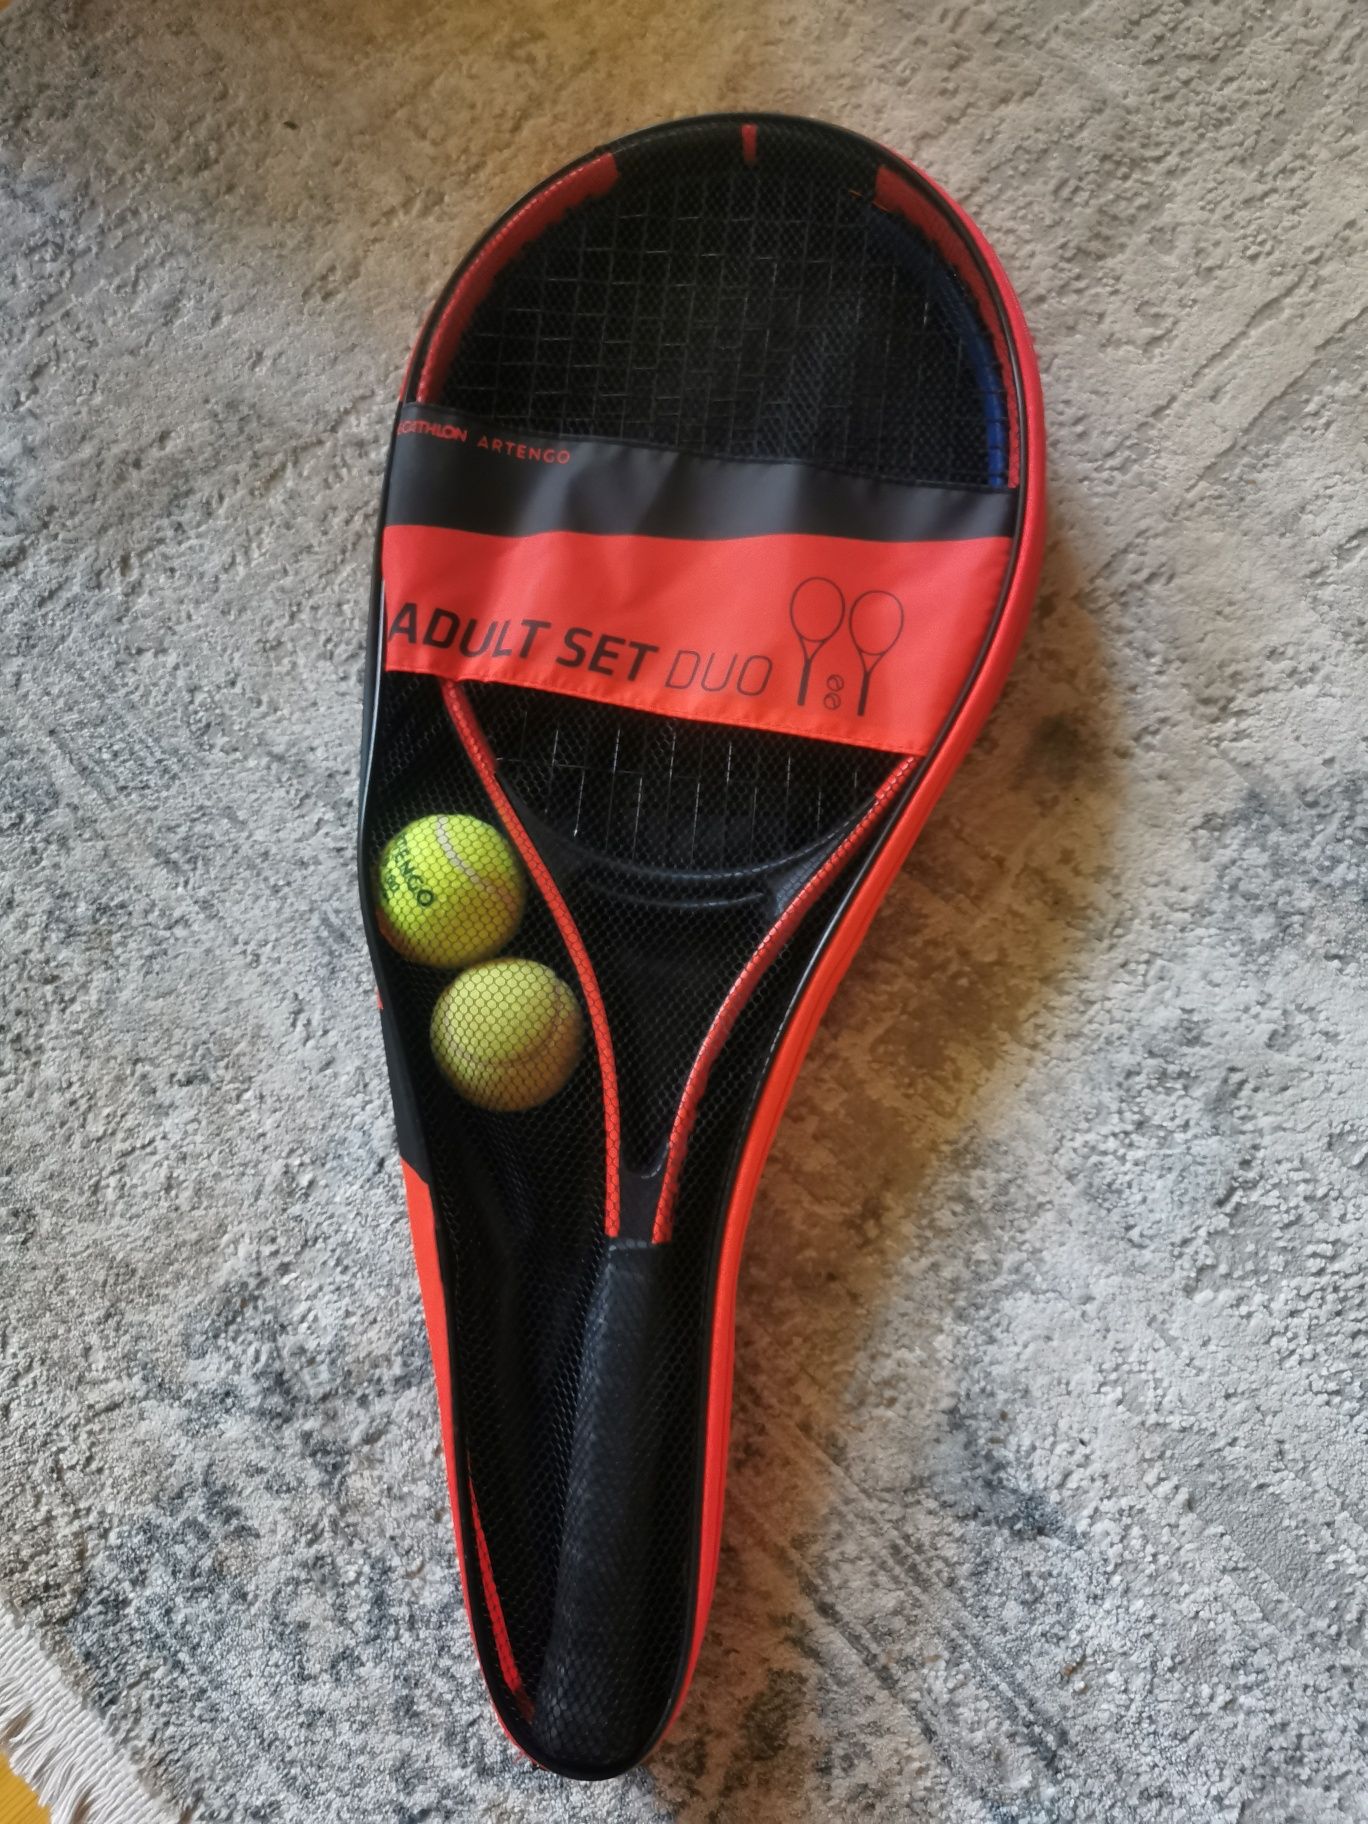 Комплект ракеток для тенниса в чехле, алюминиевые  Artengo TR110